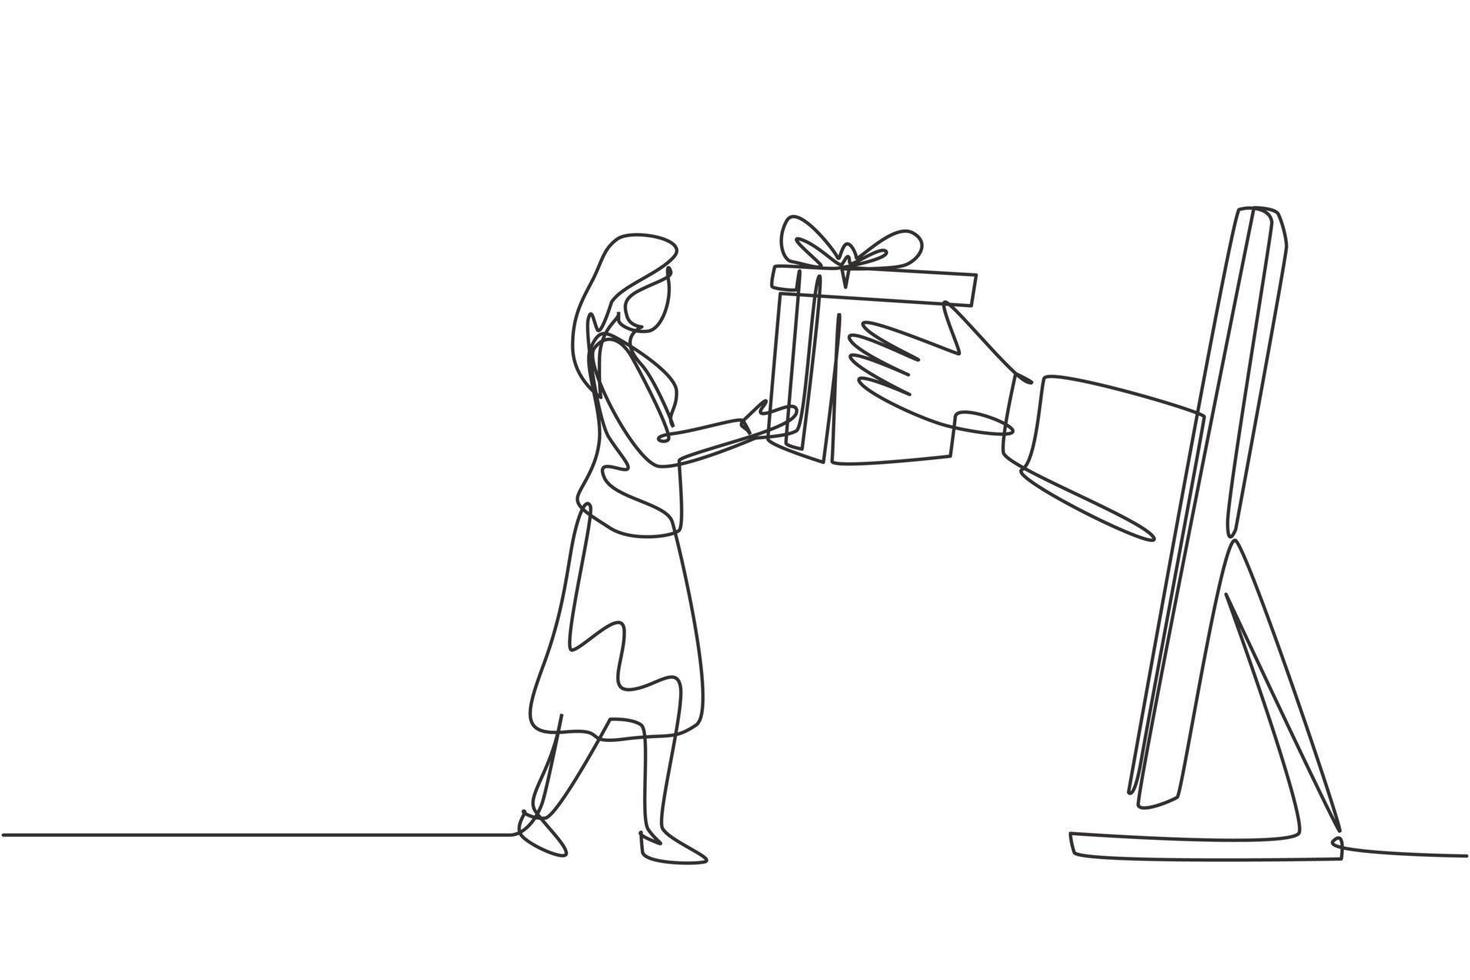 en rad ritning ung kvinna tar emot en paketlåda från en stor bildskärm och lämnar över den. e-butik, digitalt leveranskoncept. modern kontinuerlig linje rita design grafisk vektorillustration vektor